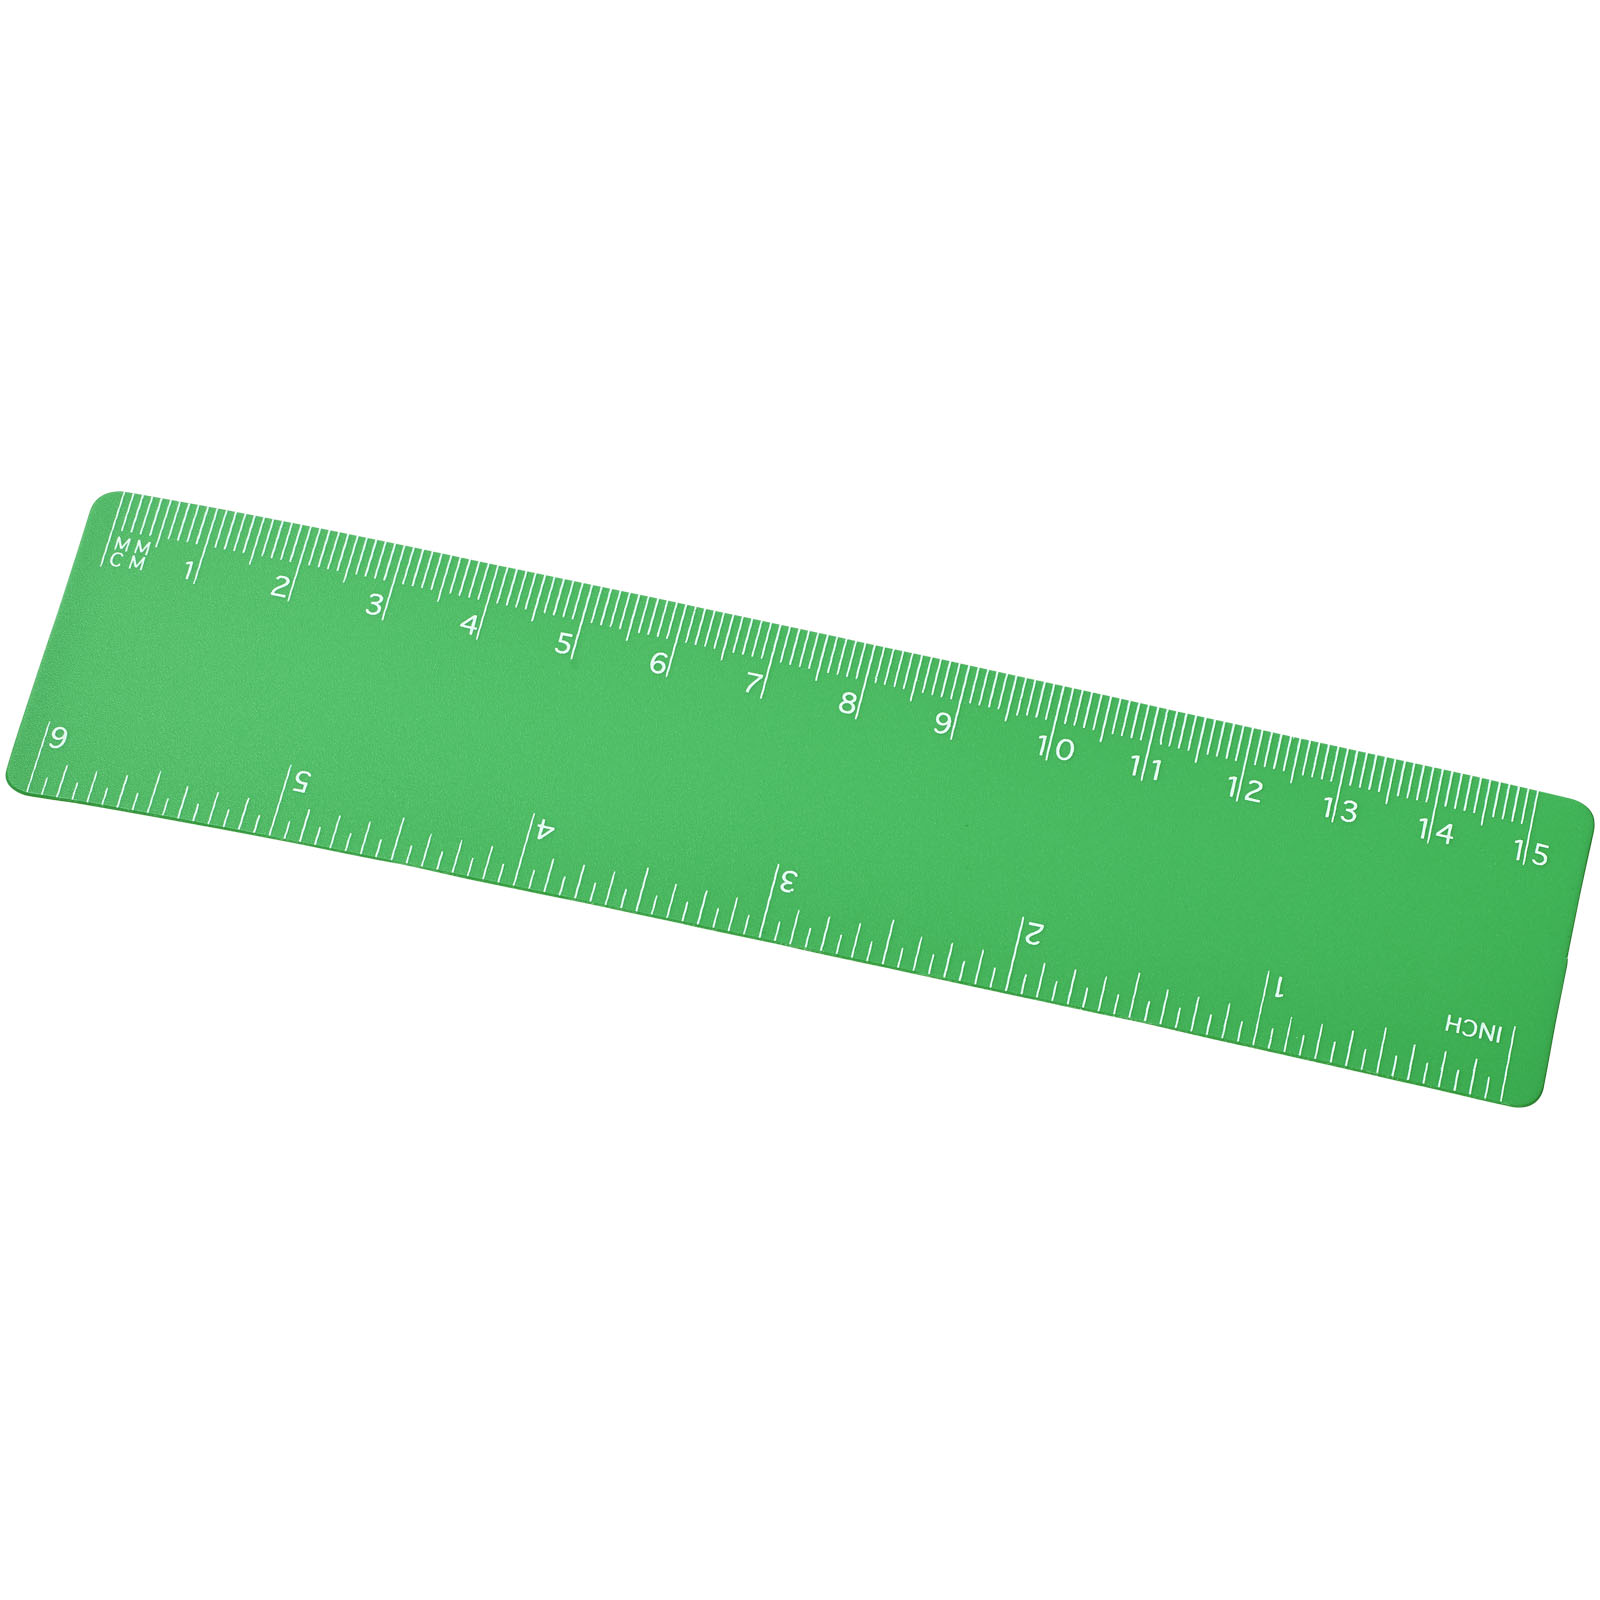 Desk Accessories - Rothko 15 cm plastic ruler